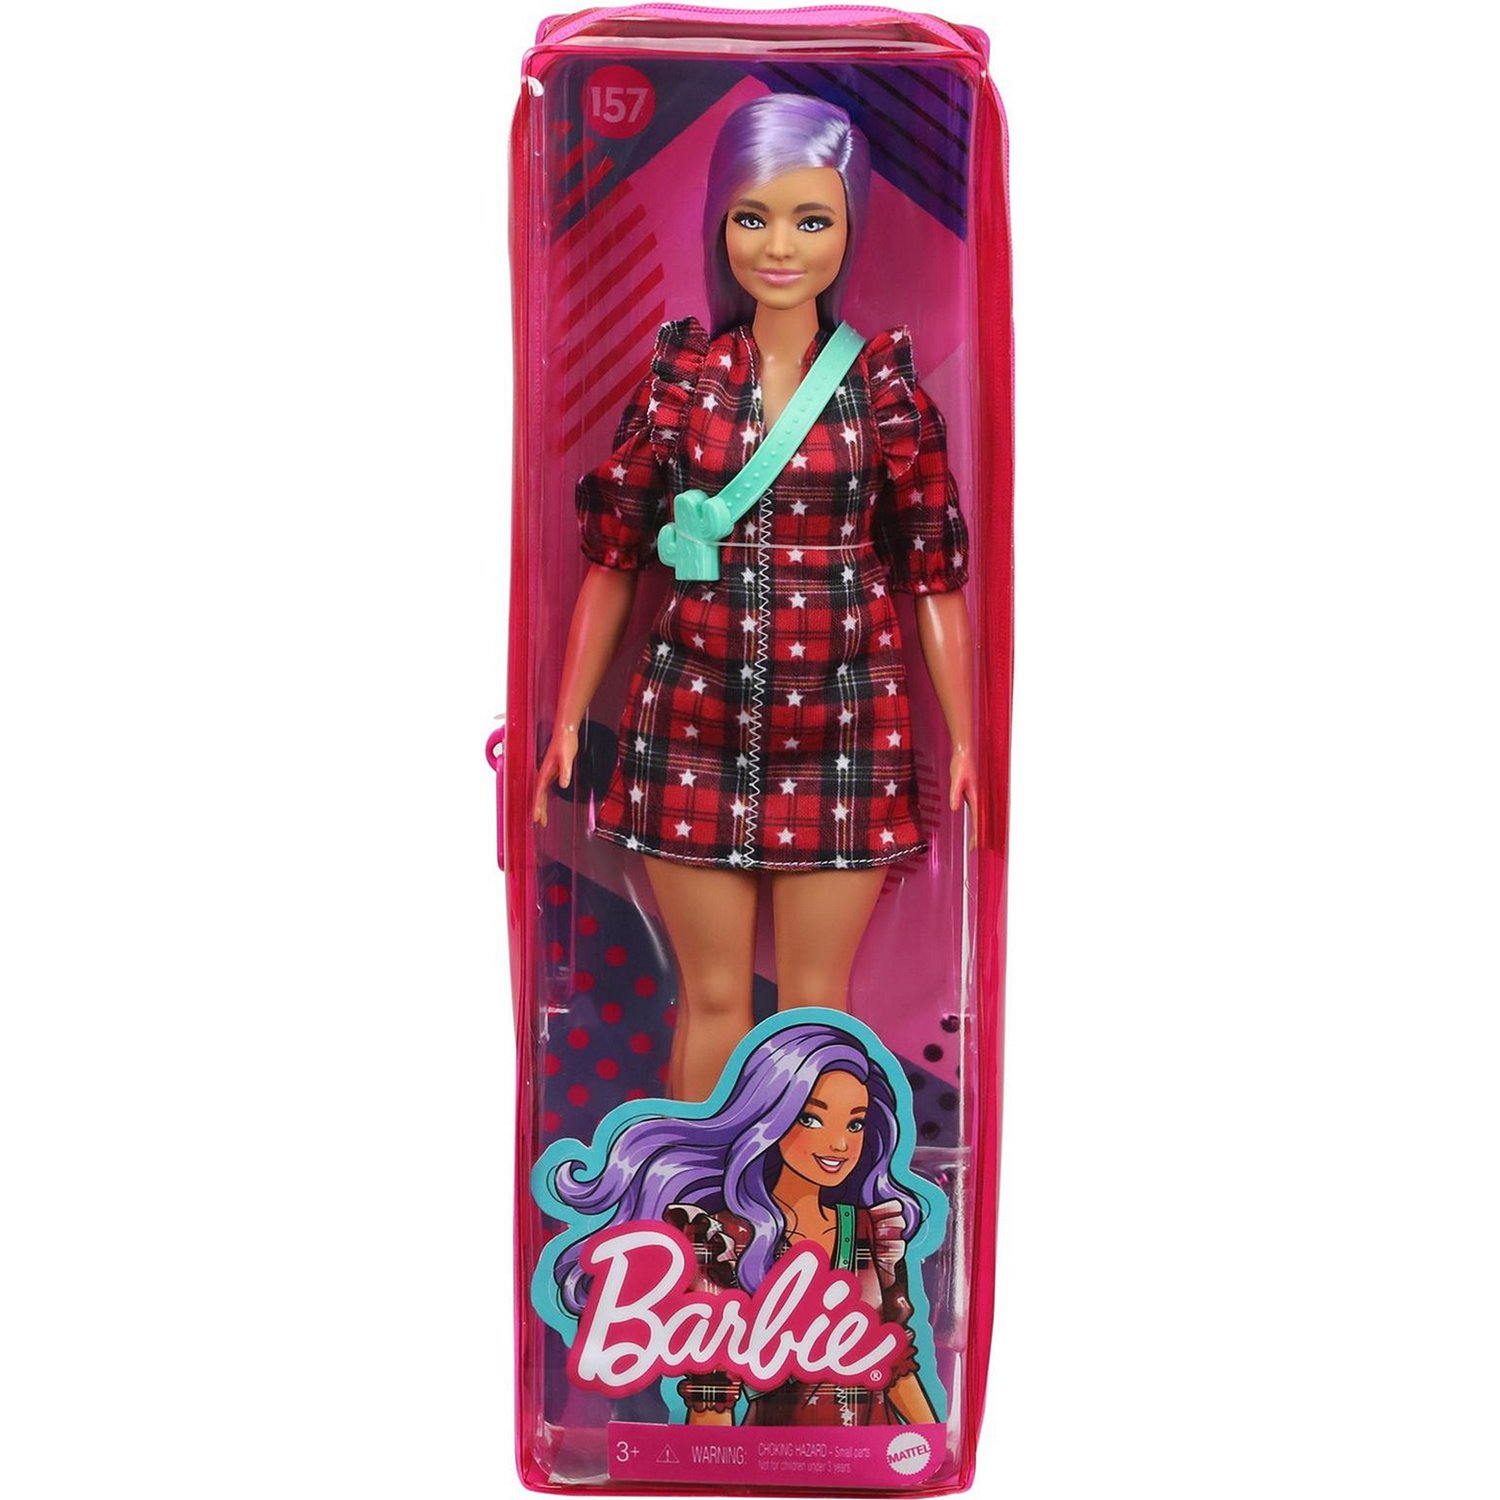 Кукла Barbie Игра с модой 157 GRB49